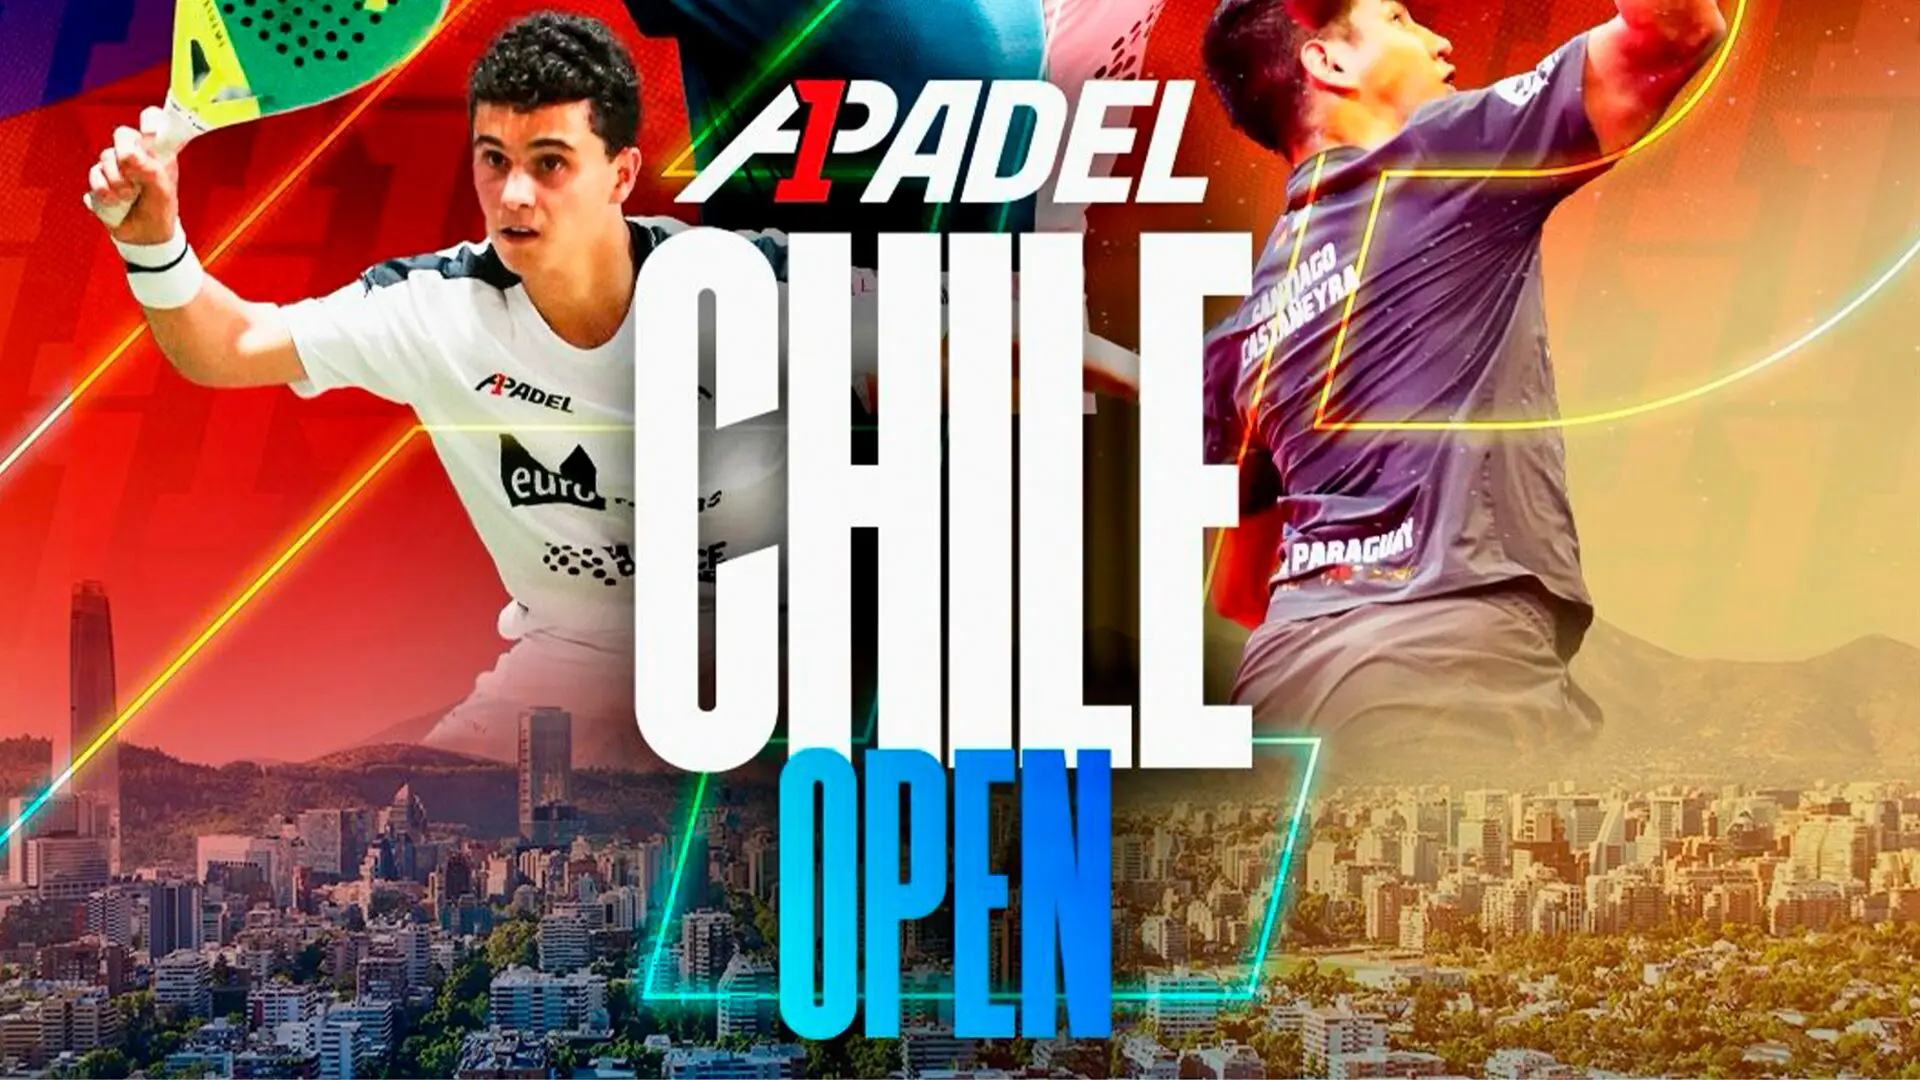 A1 Padel : Auf geht’s zu den Chile Open!